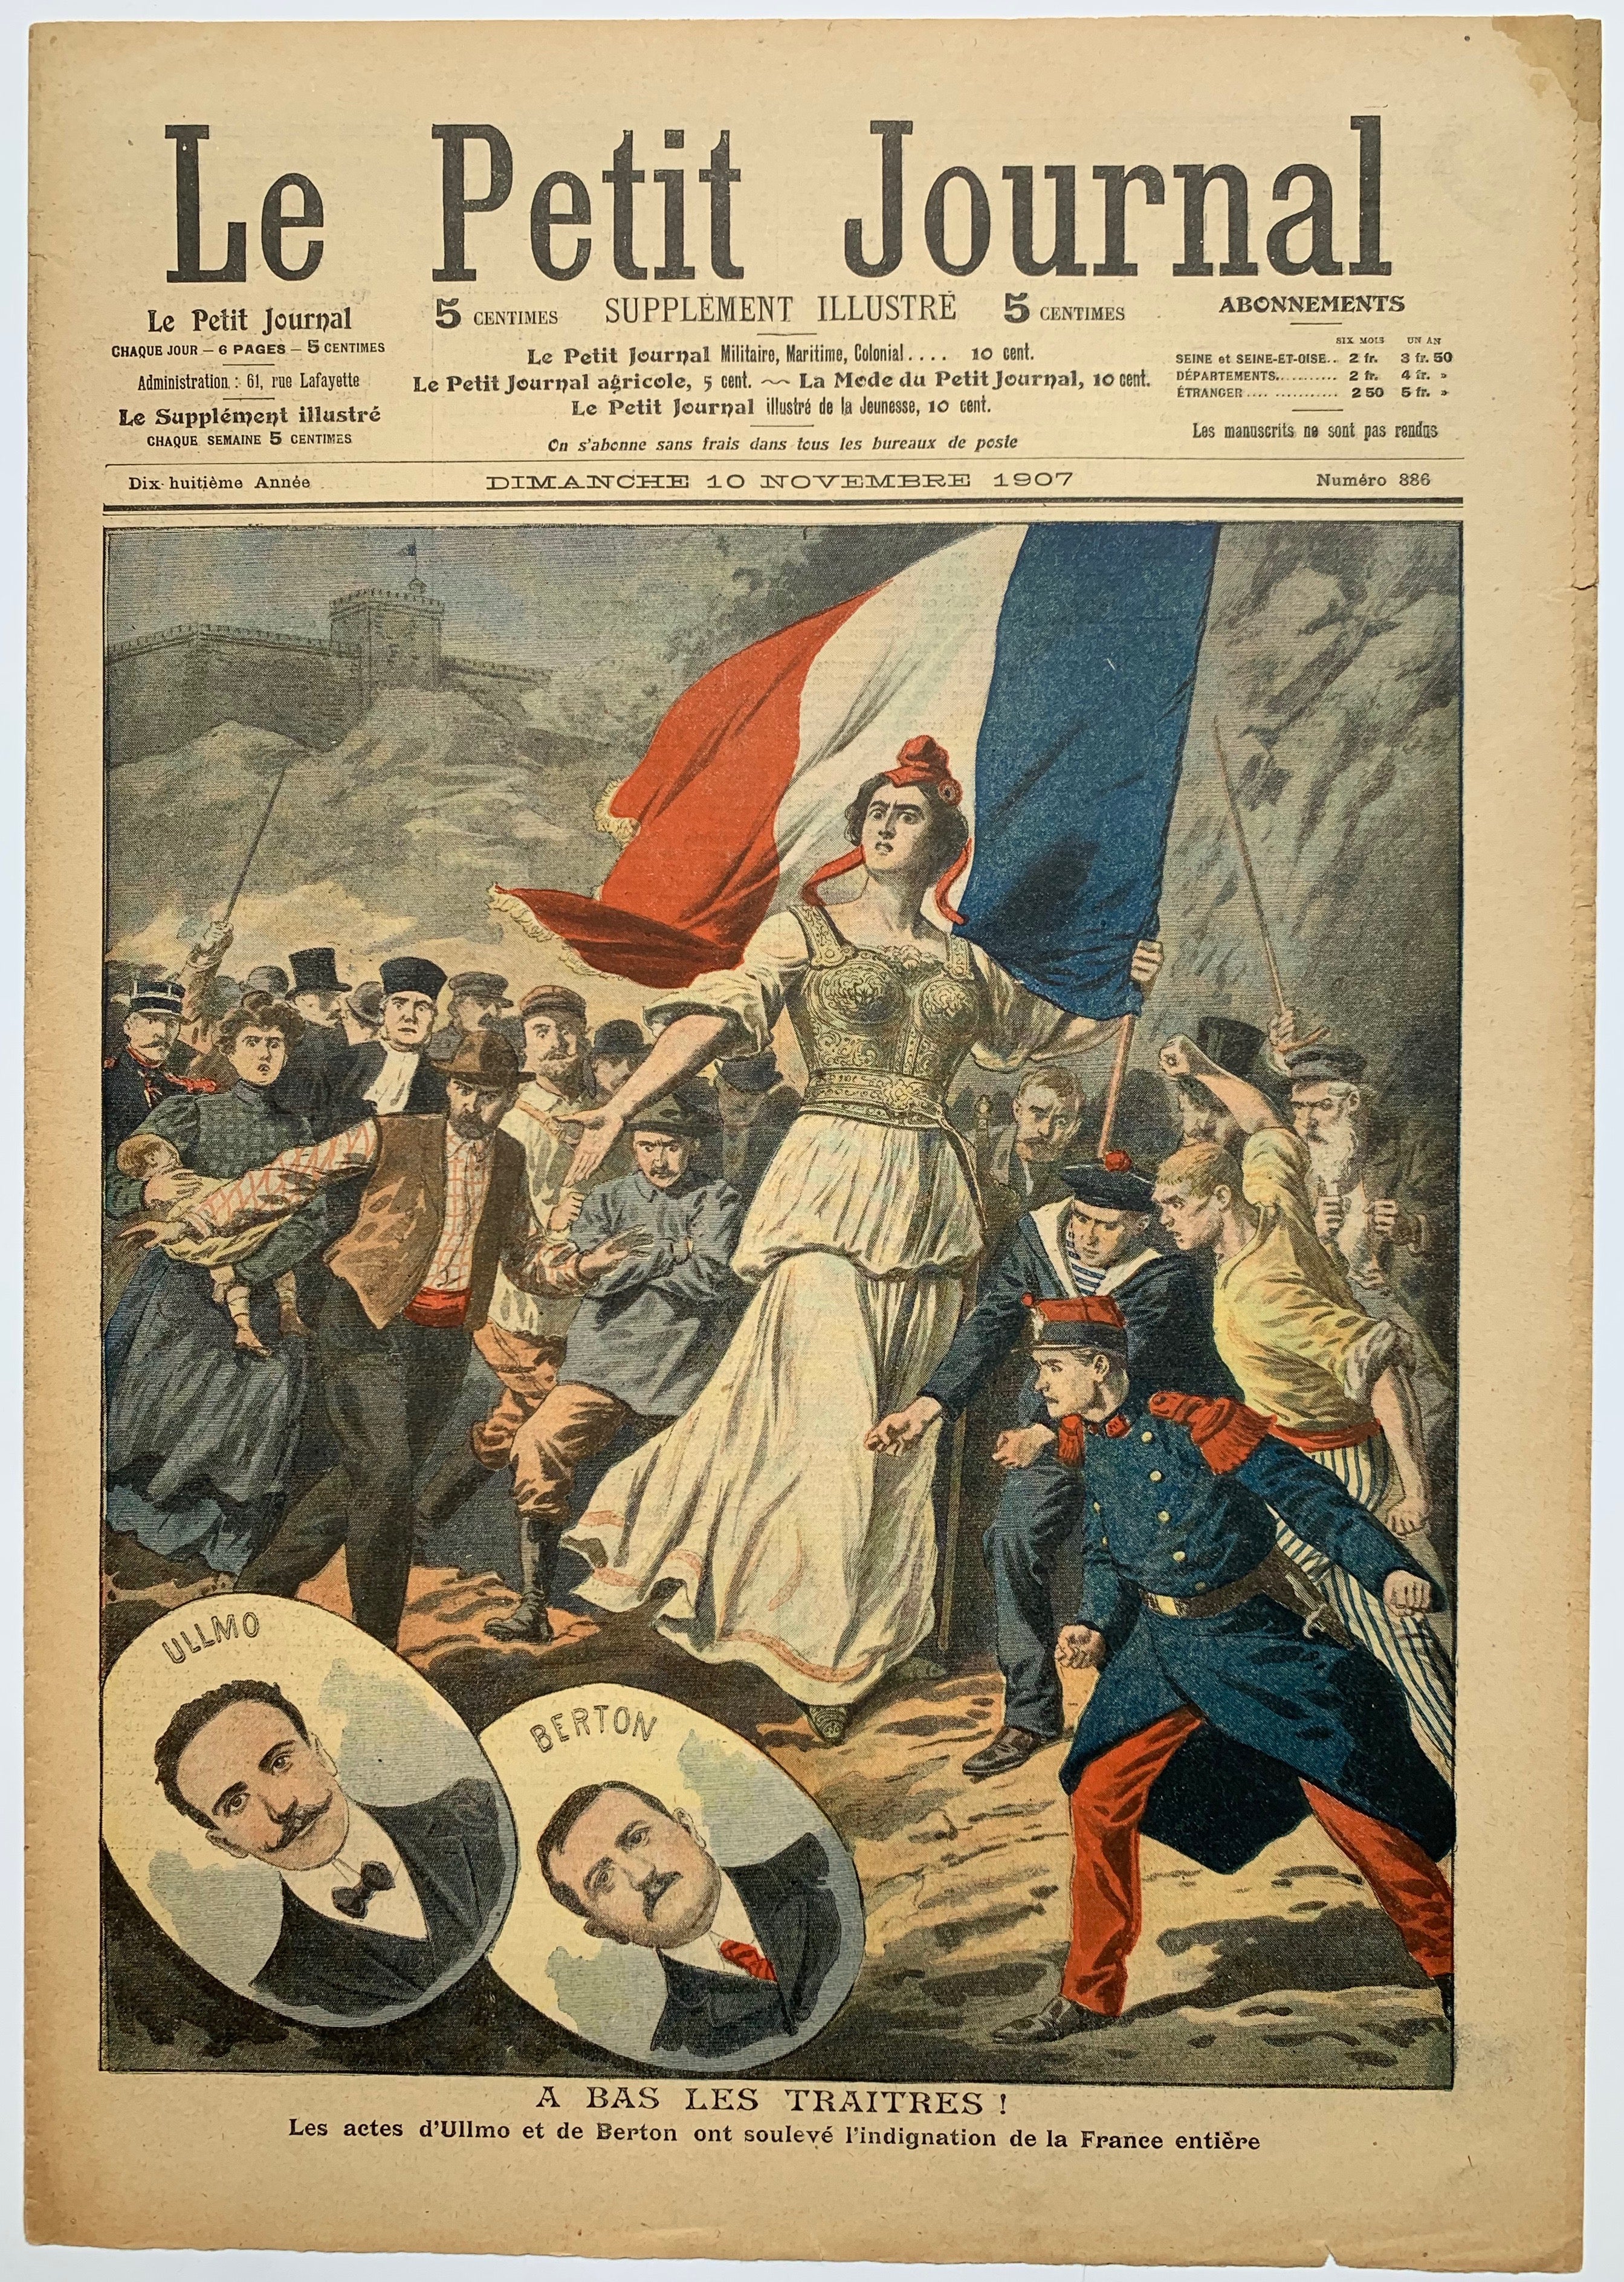 Le Petit Journal - "A Bas les Traitres!"